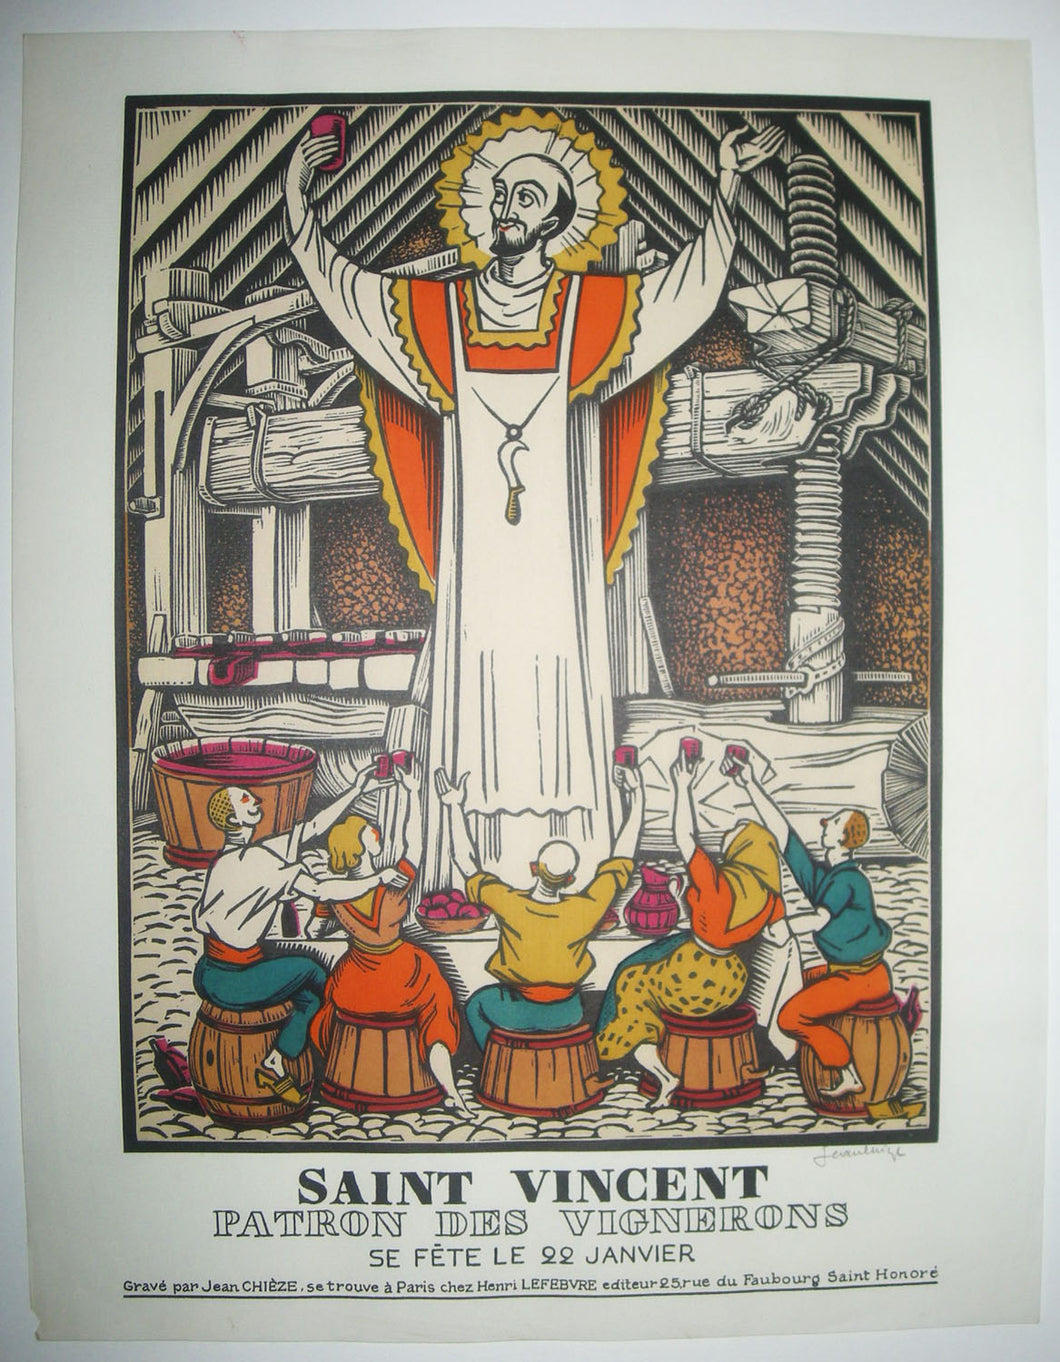 Saint Vincent, Patron des Vignerons, se fête le 22 janvier. 